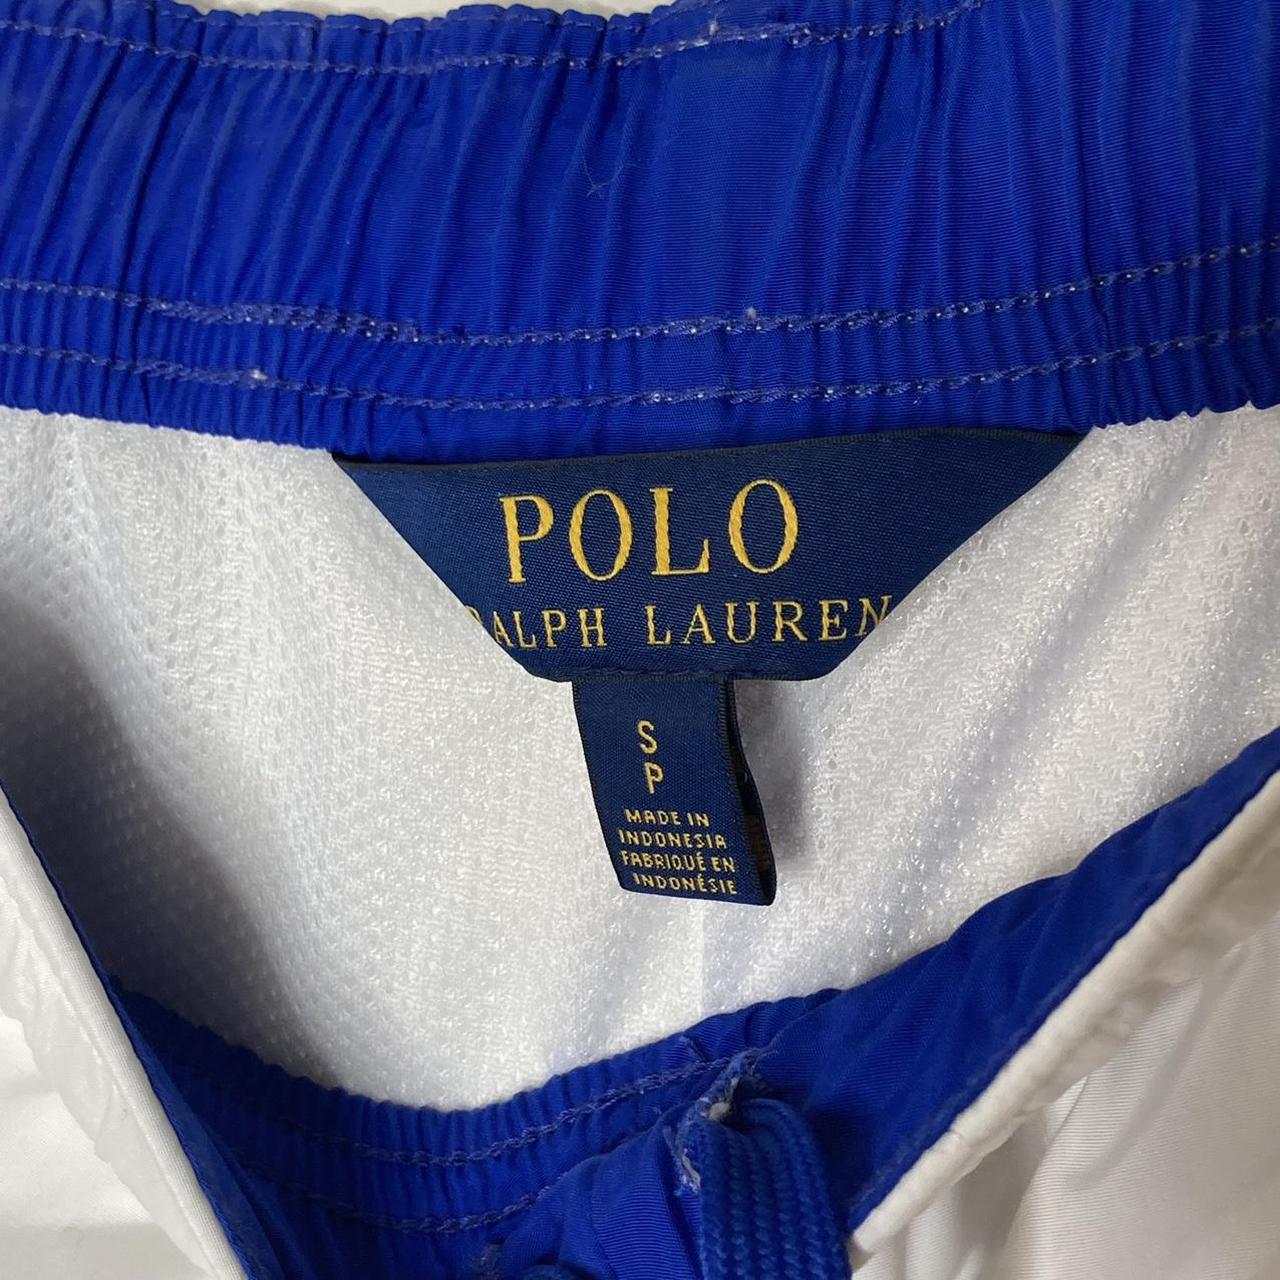 Ralph Lauren #PoloSport sweatpants New with - Depop